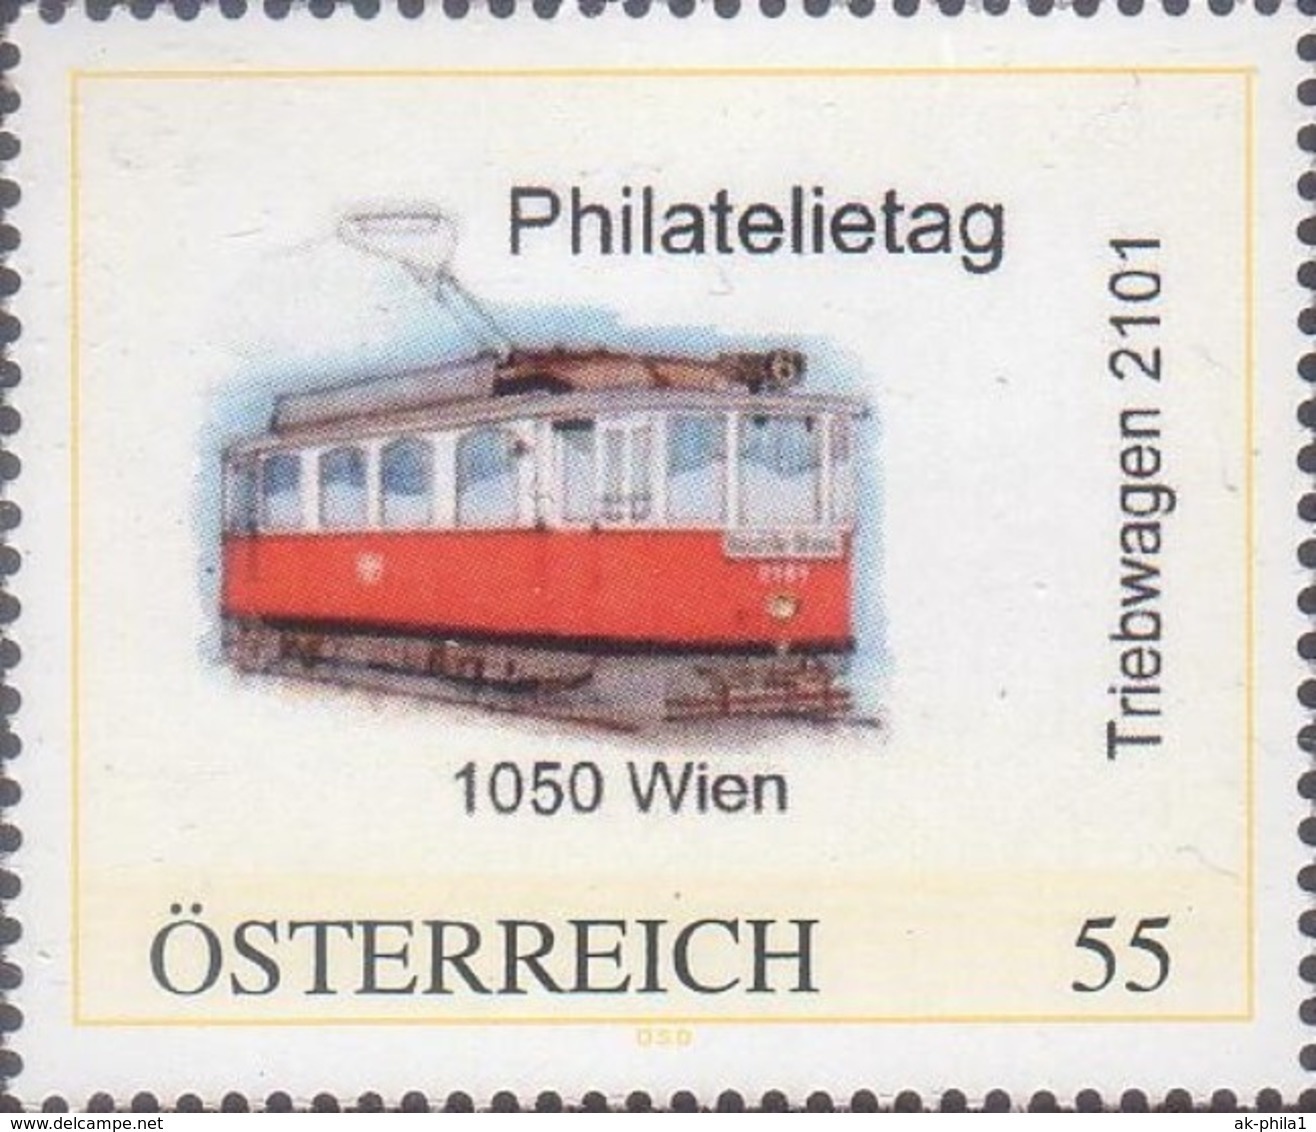 Philatelietag 1050 Wien - Straßenbahn Triebwagen 2101 - 8028406** - Personalisierte Briefmarken